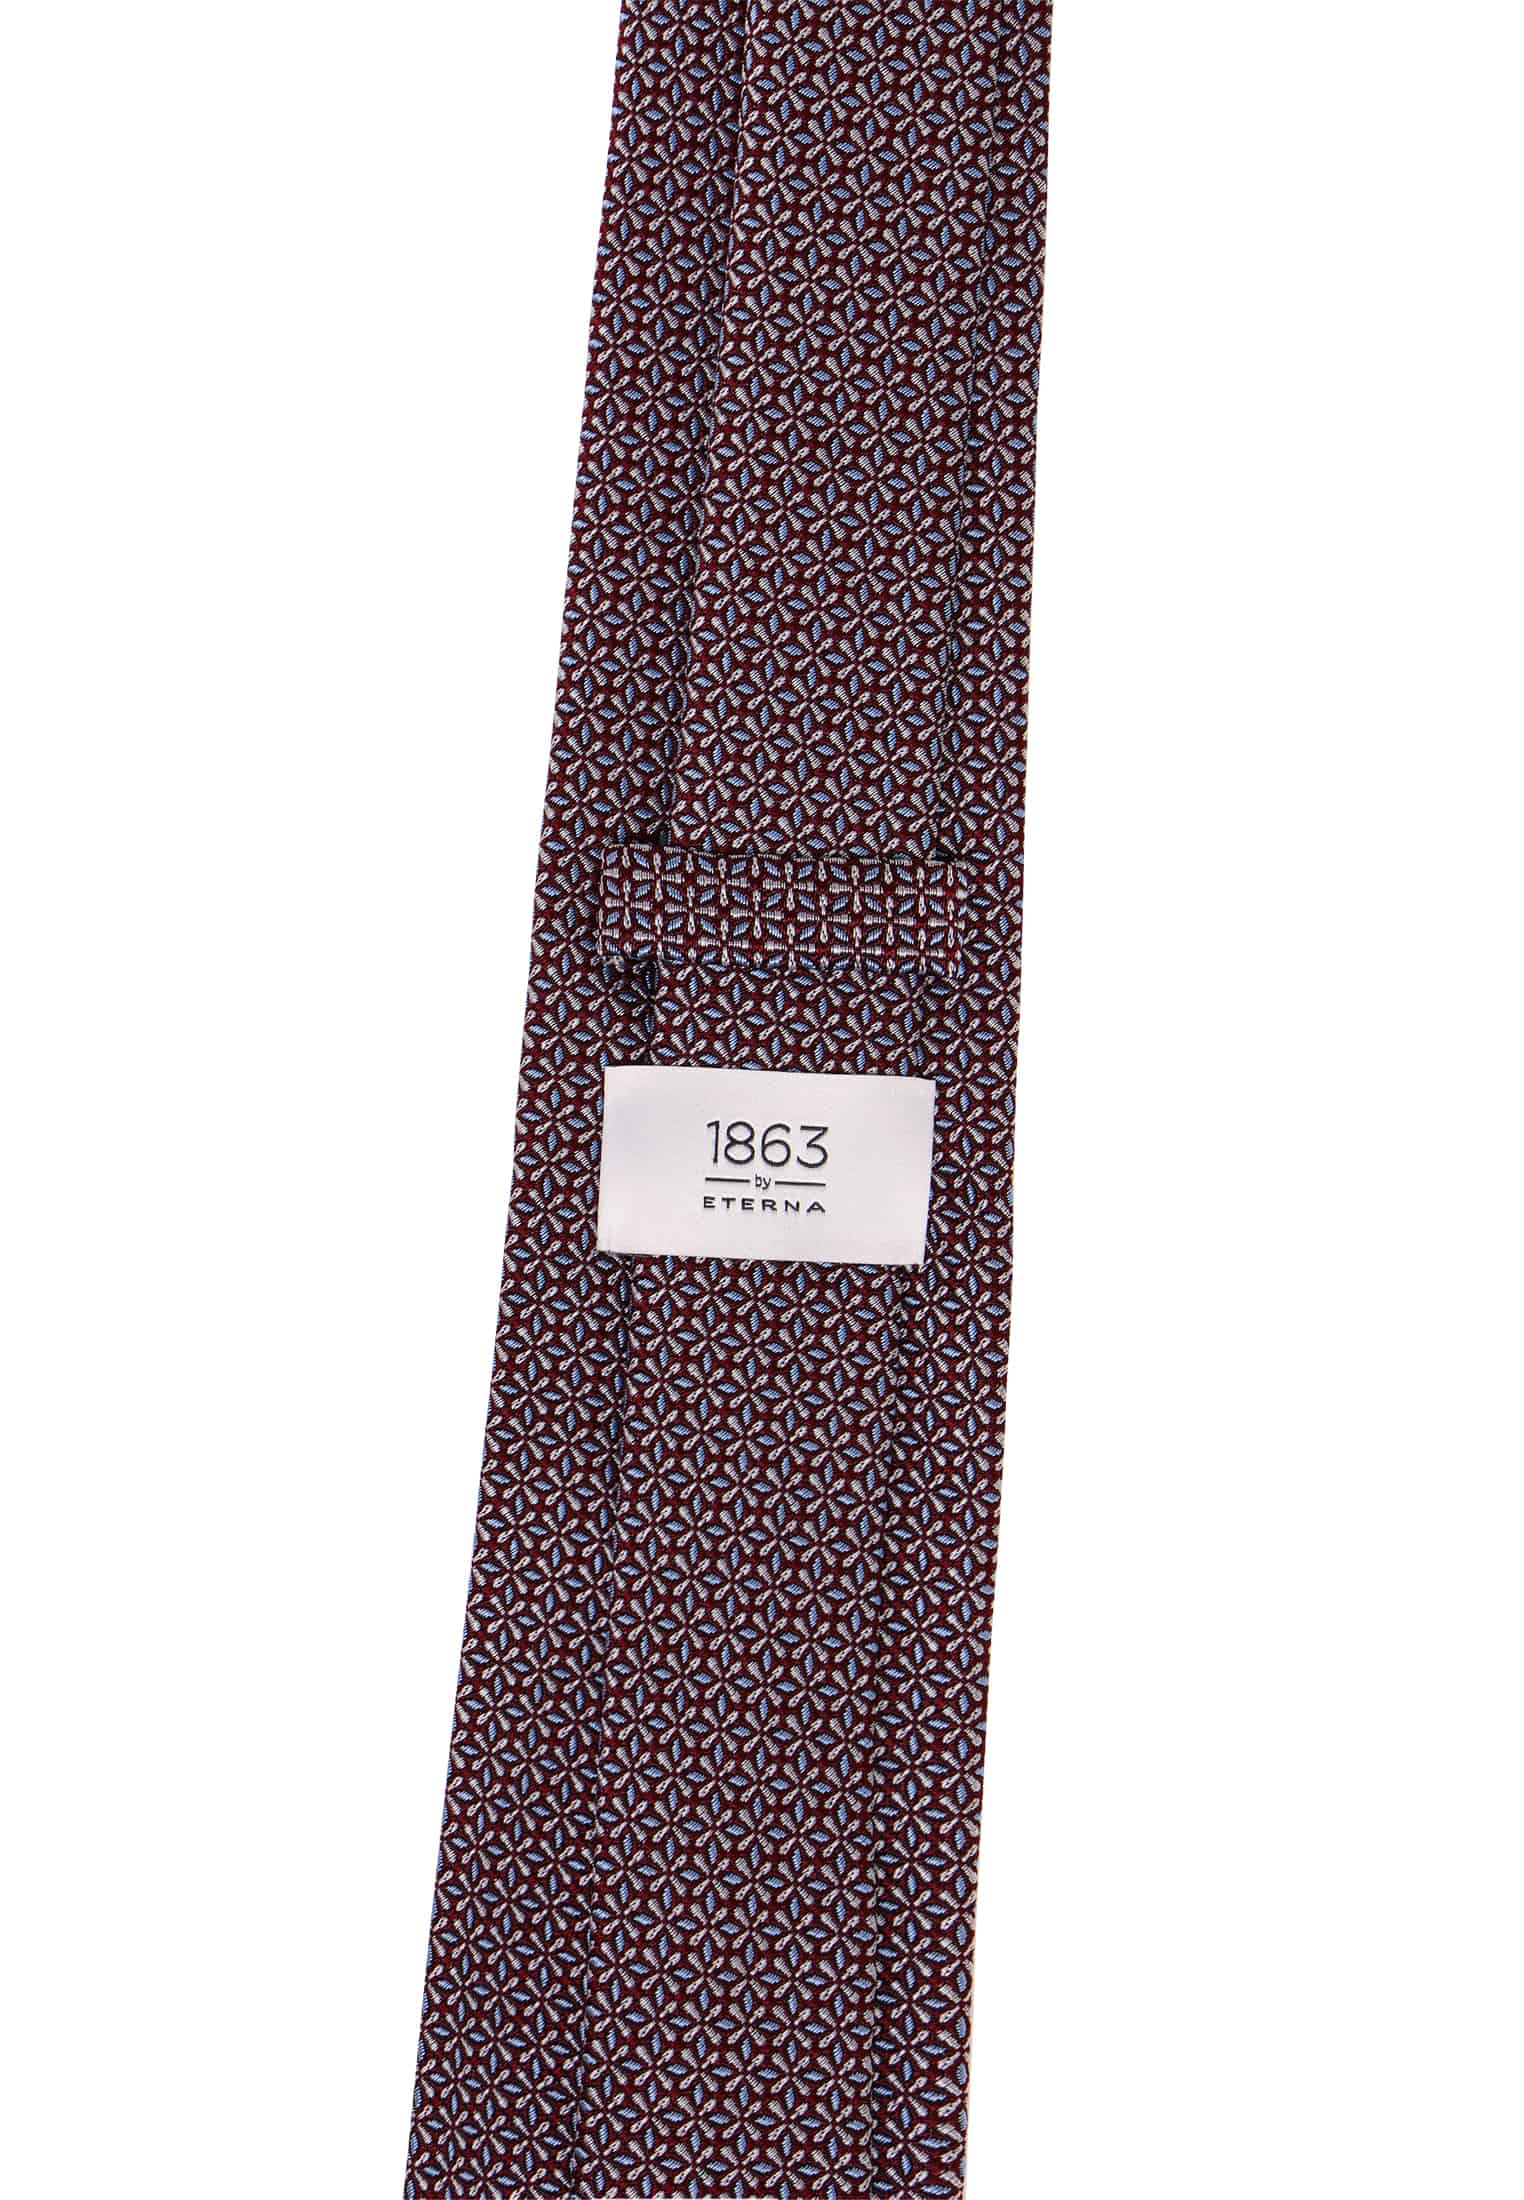 Krawatte in braun strukturiert | braun | 142 | 1AC02043-02-91-142